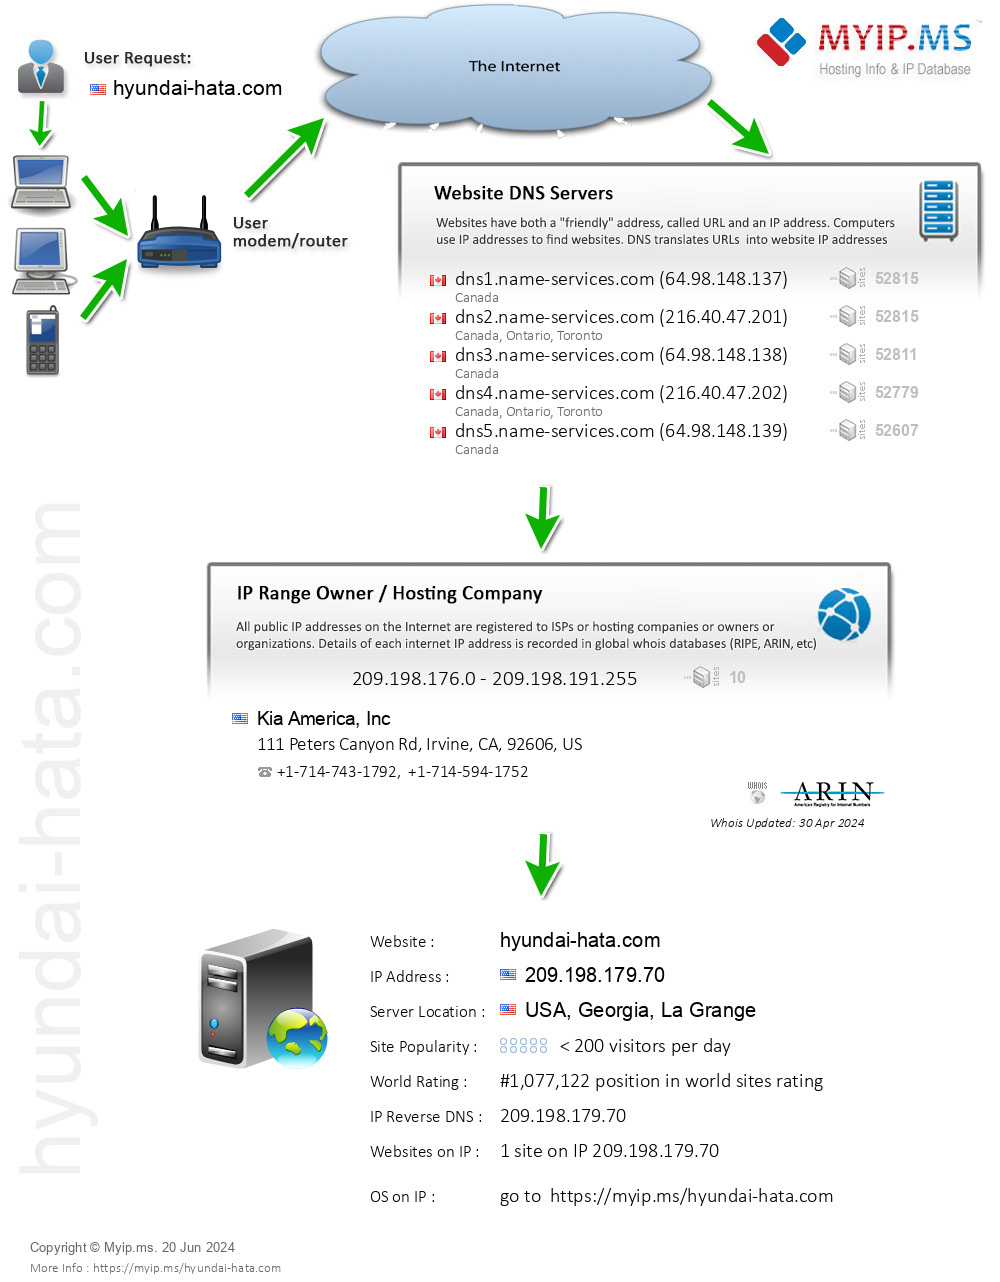 Hyundai-hata.com - Website Hosting Visual IP Diagram